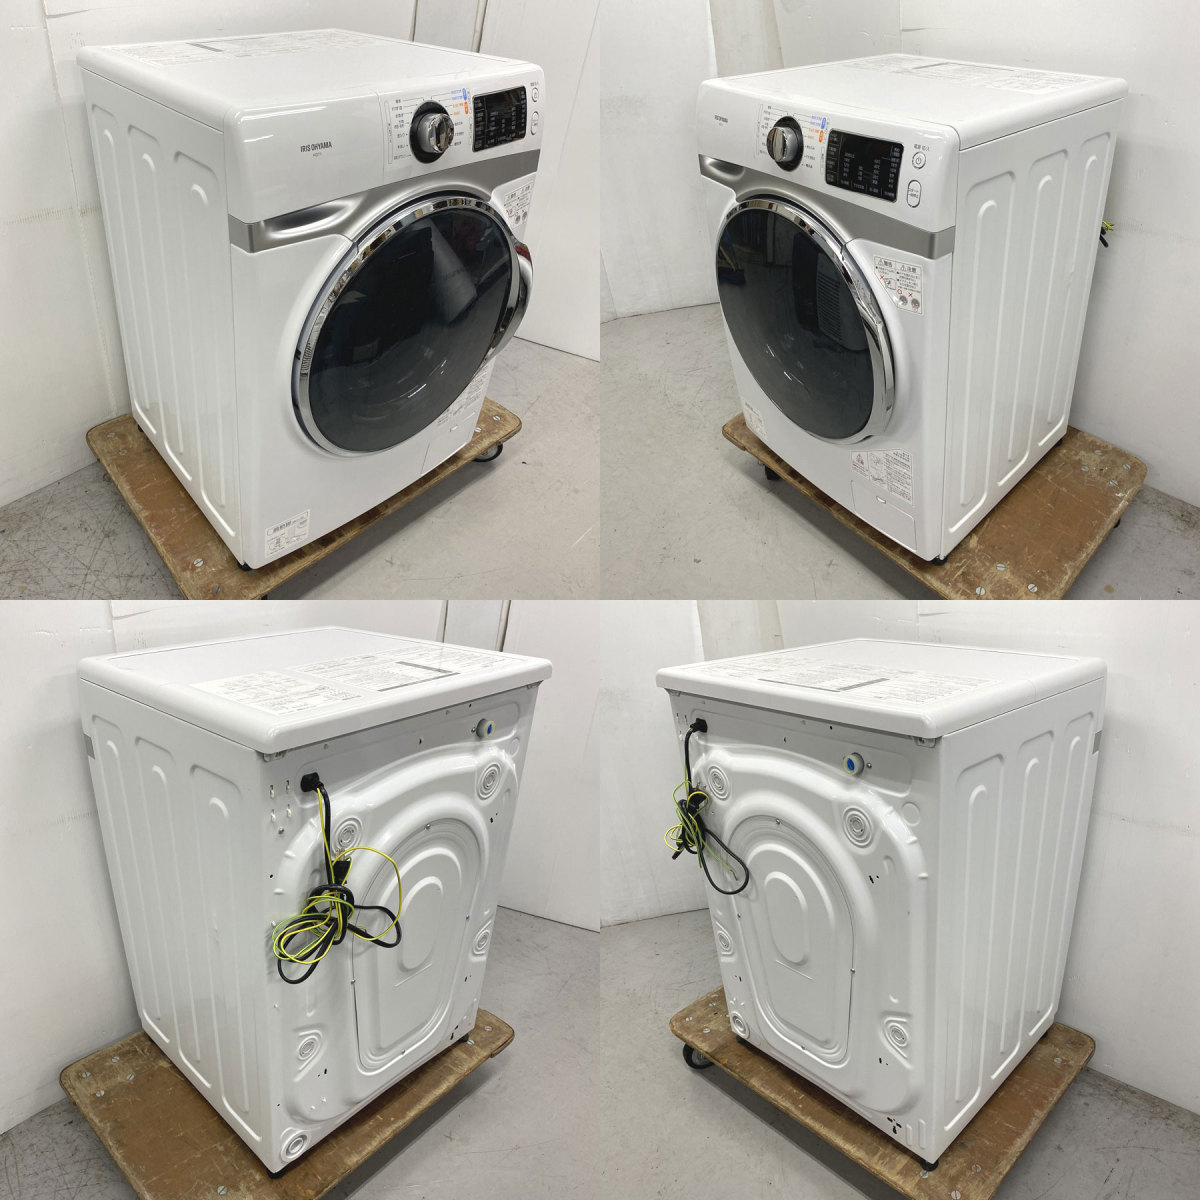 アイリスオーヤマ 洗濯機 ドラム式洗濯機 7.5kg 温水洗浄 皮脂汚れ 部屋干し 節水 幅595mm 奥行672mm HD71_画像2